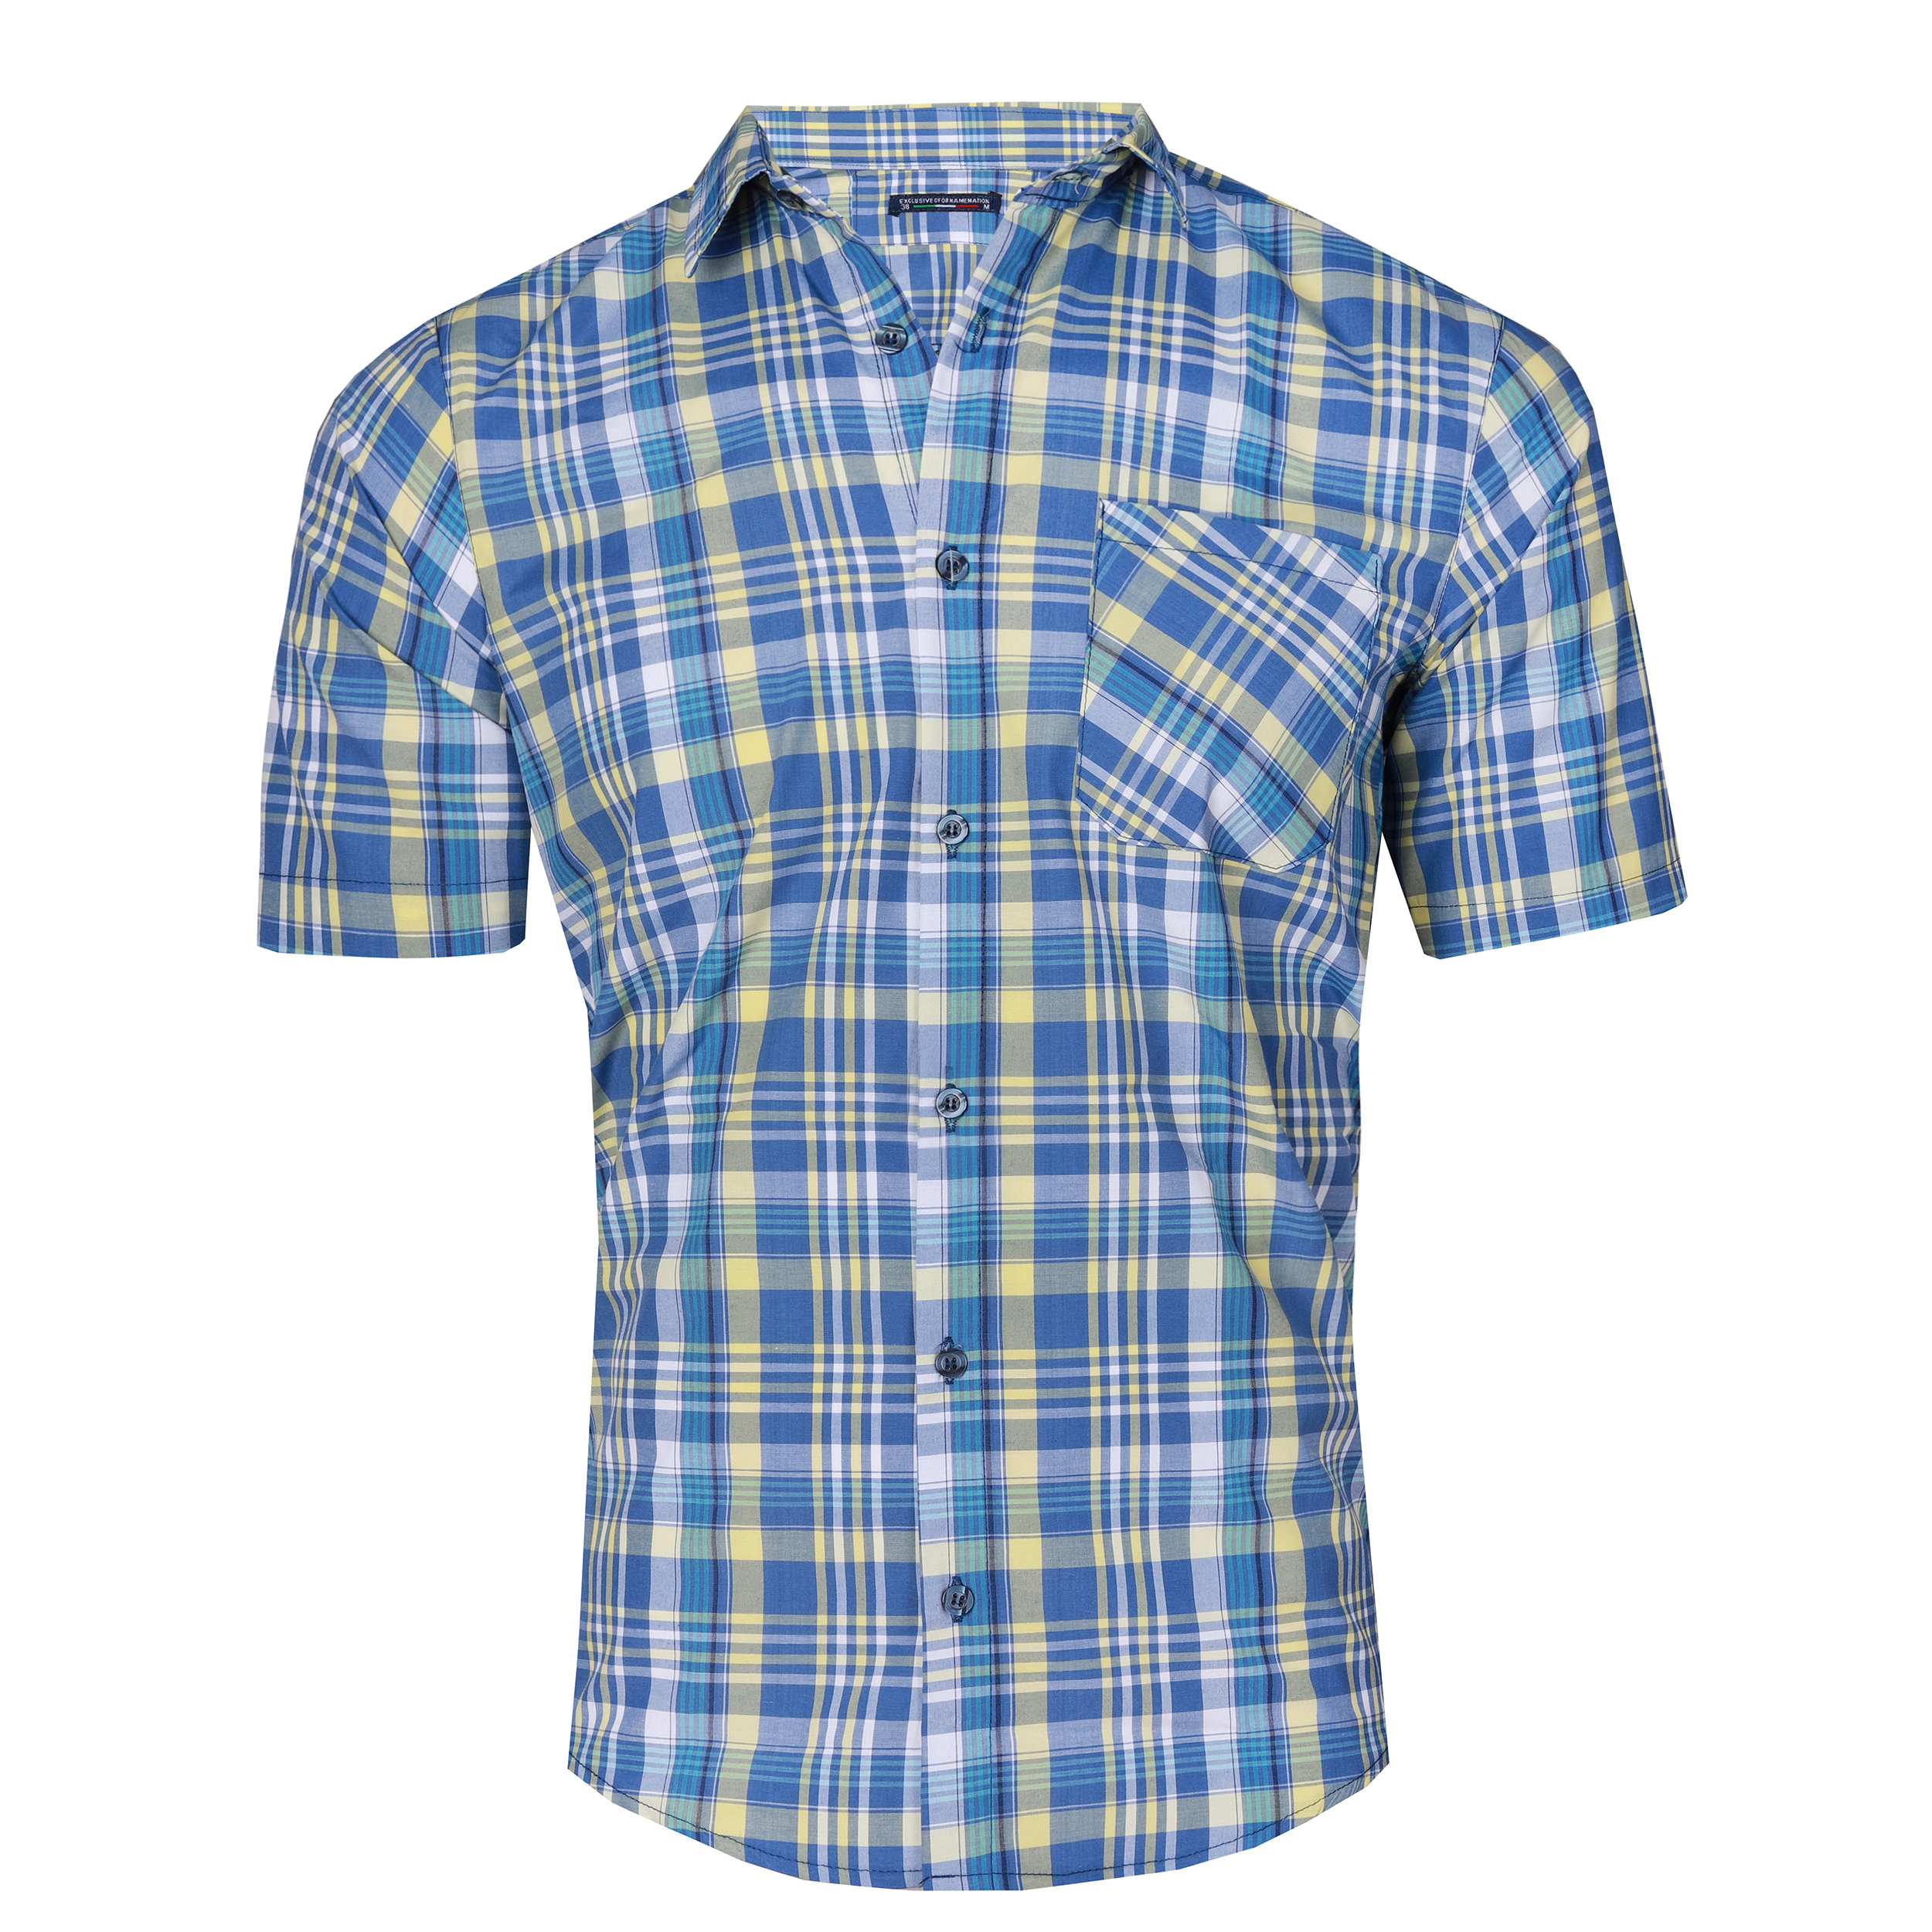 نکته خرید - قیمت روز پیراهن آستین کوتاه مردانه مدل BZ14 خرید